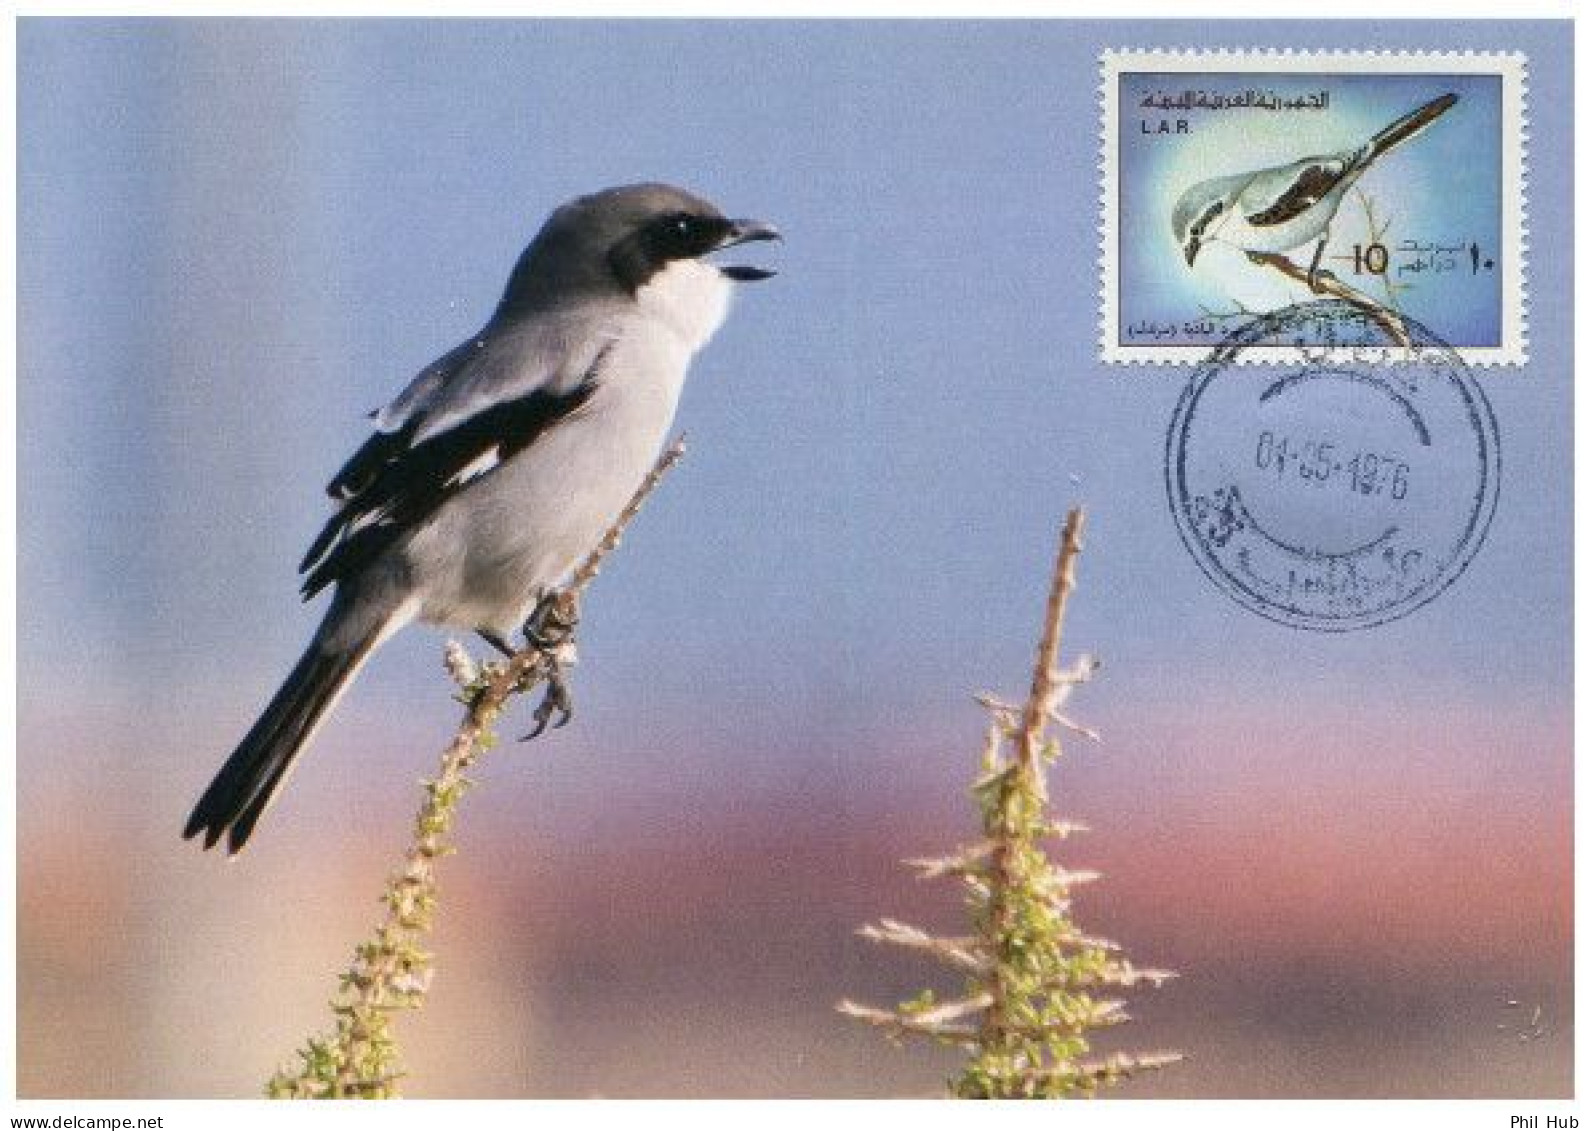 LIBYA 1976 Birds Bird "Iberian Grey Shrike" (maximum-card) #2 - Cernícalo